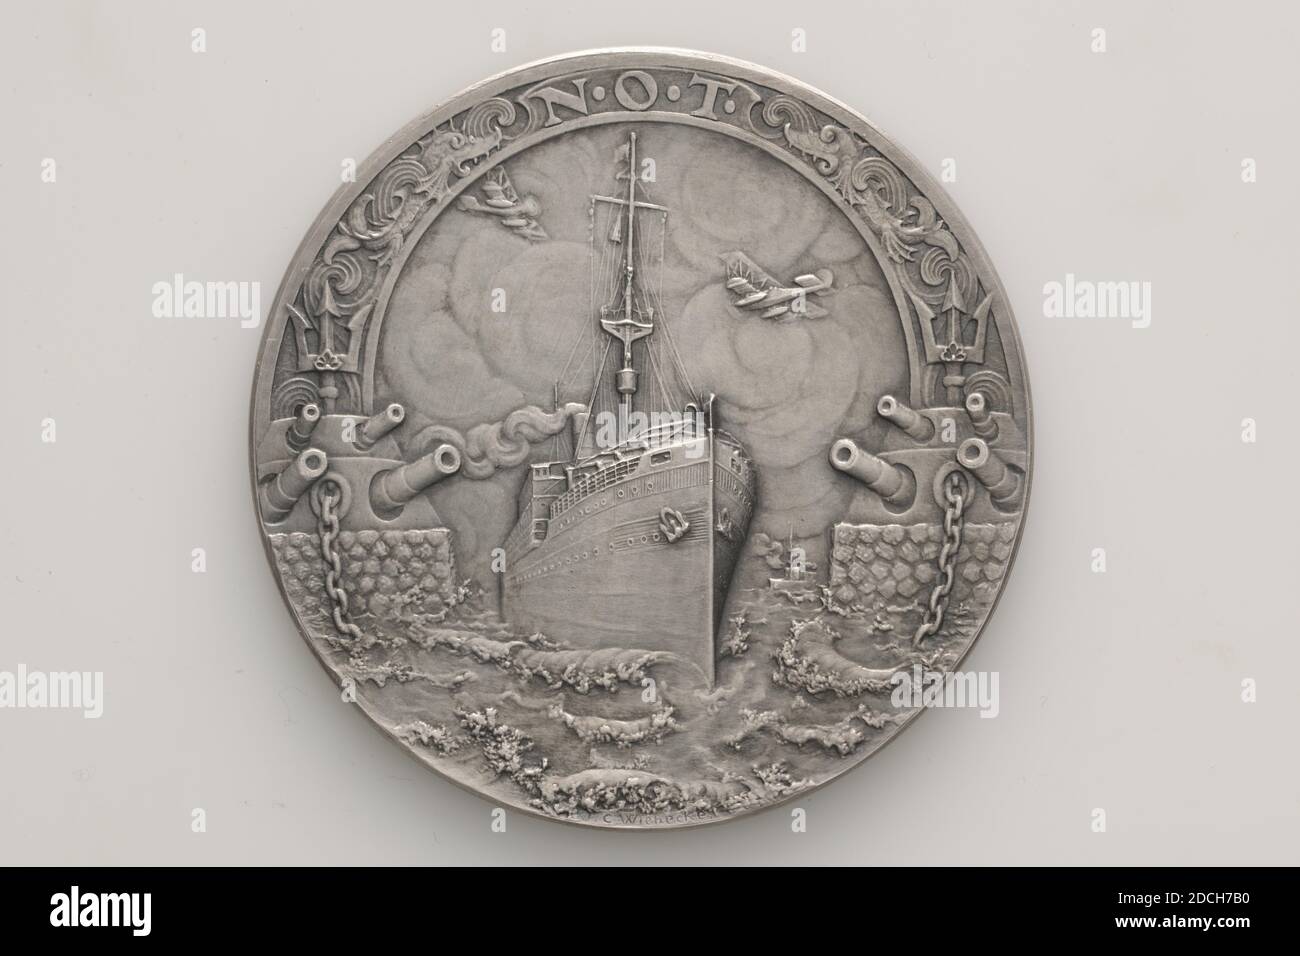 Medaglia commemorativa, Johannes Cornelis Wienecke, 1919, Generale: 6.5 x 0.3cm 65 x 3mm, peso: 99.5g, drago, piroscafo, segno di arma, armi e munizioni, medaglia commemorativa d'argento, coniata per la Nederlandsche Overzee Trustmaatschappij, 1919. Sull'ossale è lo stemma con lo scudo olandese con il leone di arrampicata circondato da emblemi del commercio e dell'industria. Sopra di essa si trova l'iscrizione 1914-1919. Tutto questo è circondato da spighe di mais e circondato dalla circolare NEDERLANDSCHE OVERSEETRUSTMAATSCHAPPIJ. Nella parte inferiore della circolare è inciso JWC. Al contrario, è presente un Foto Stock